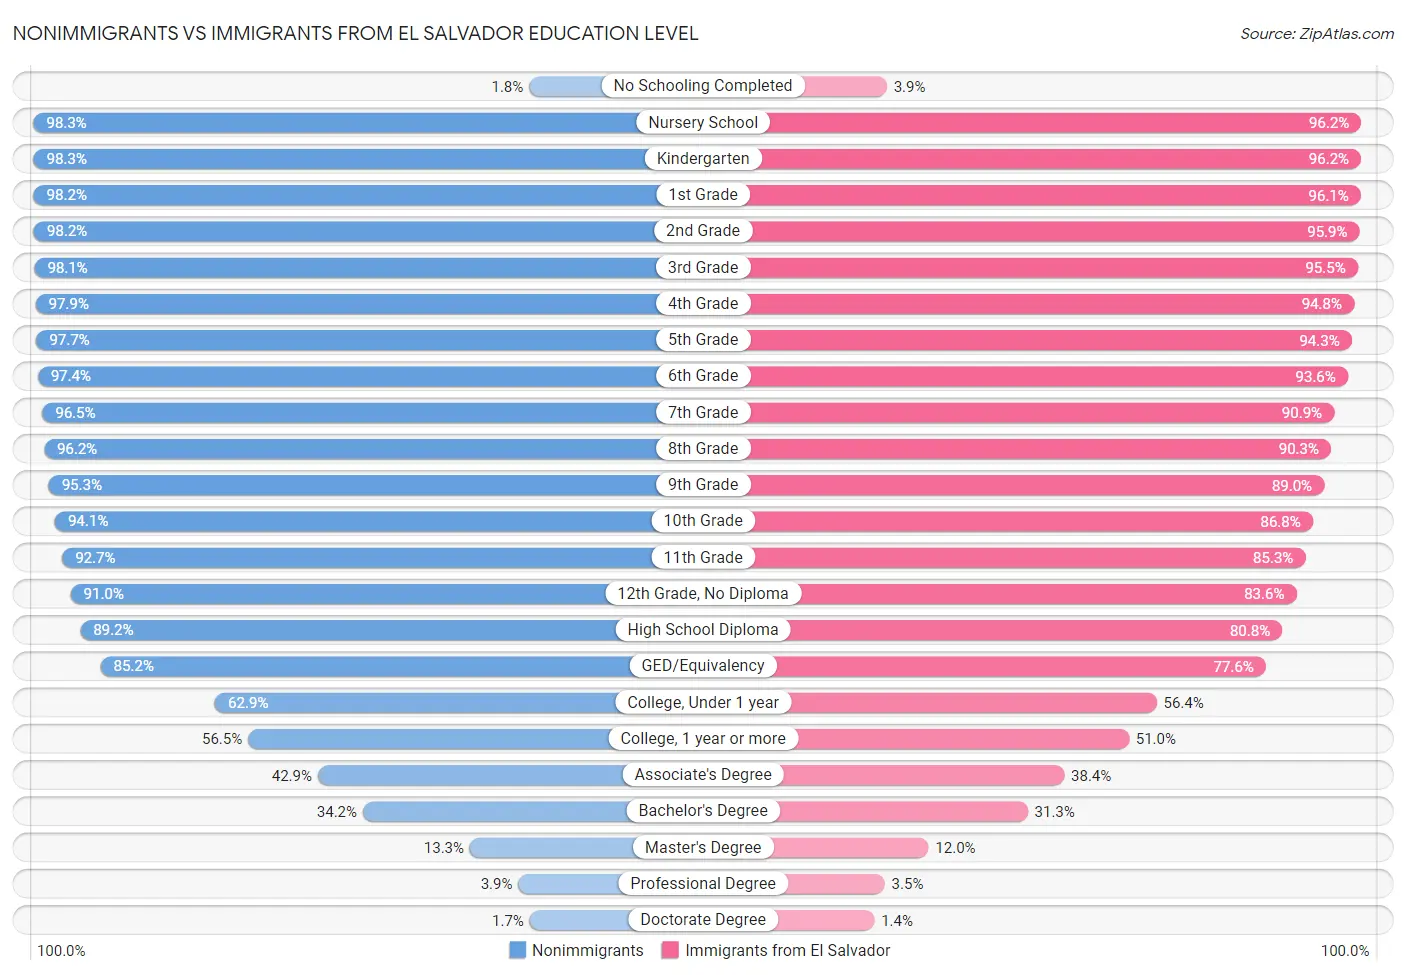 Nonimmigrants vs Immigrants from El Salvador Education Level